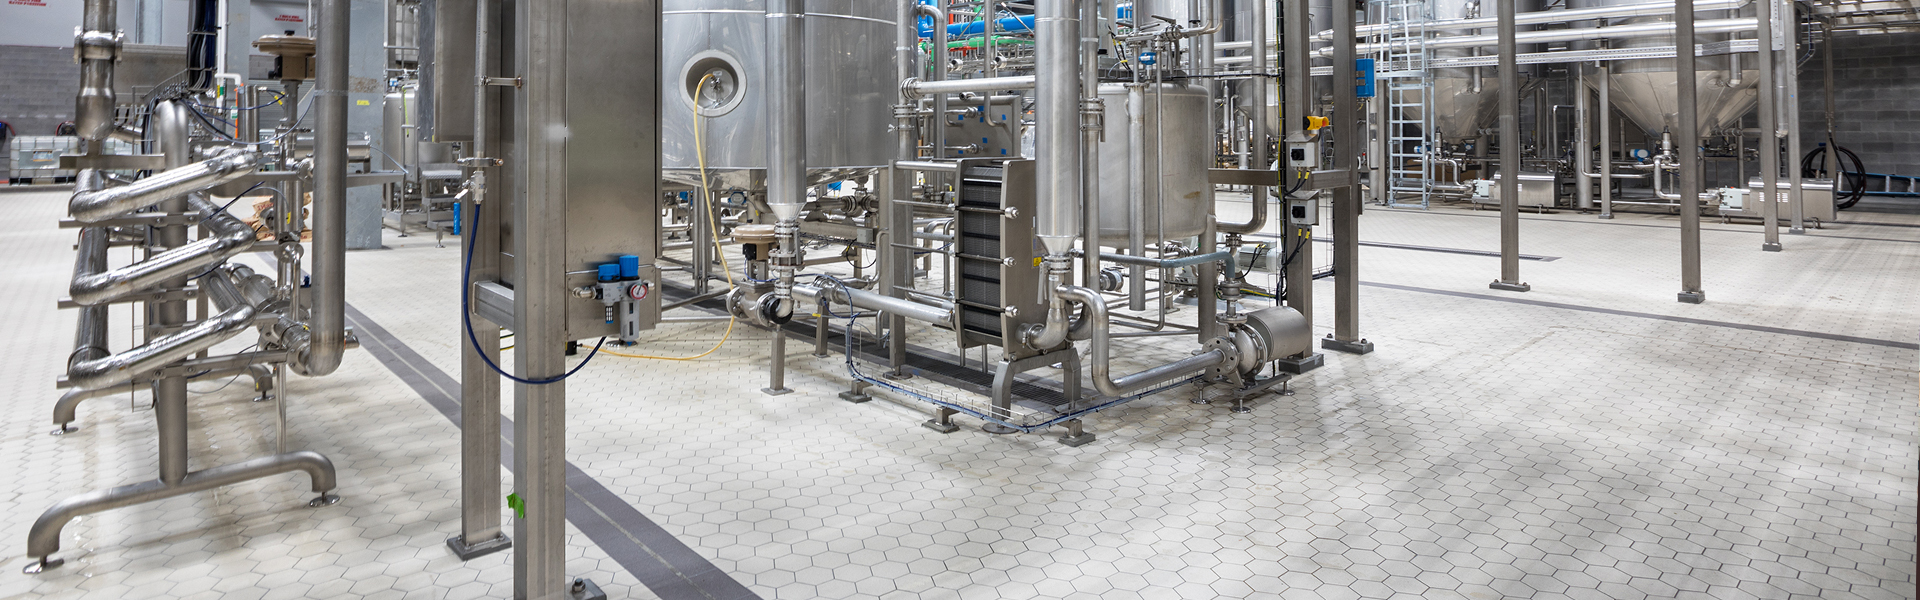 industrial tile flooring in brewery